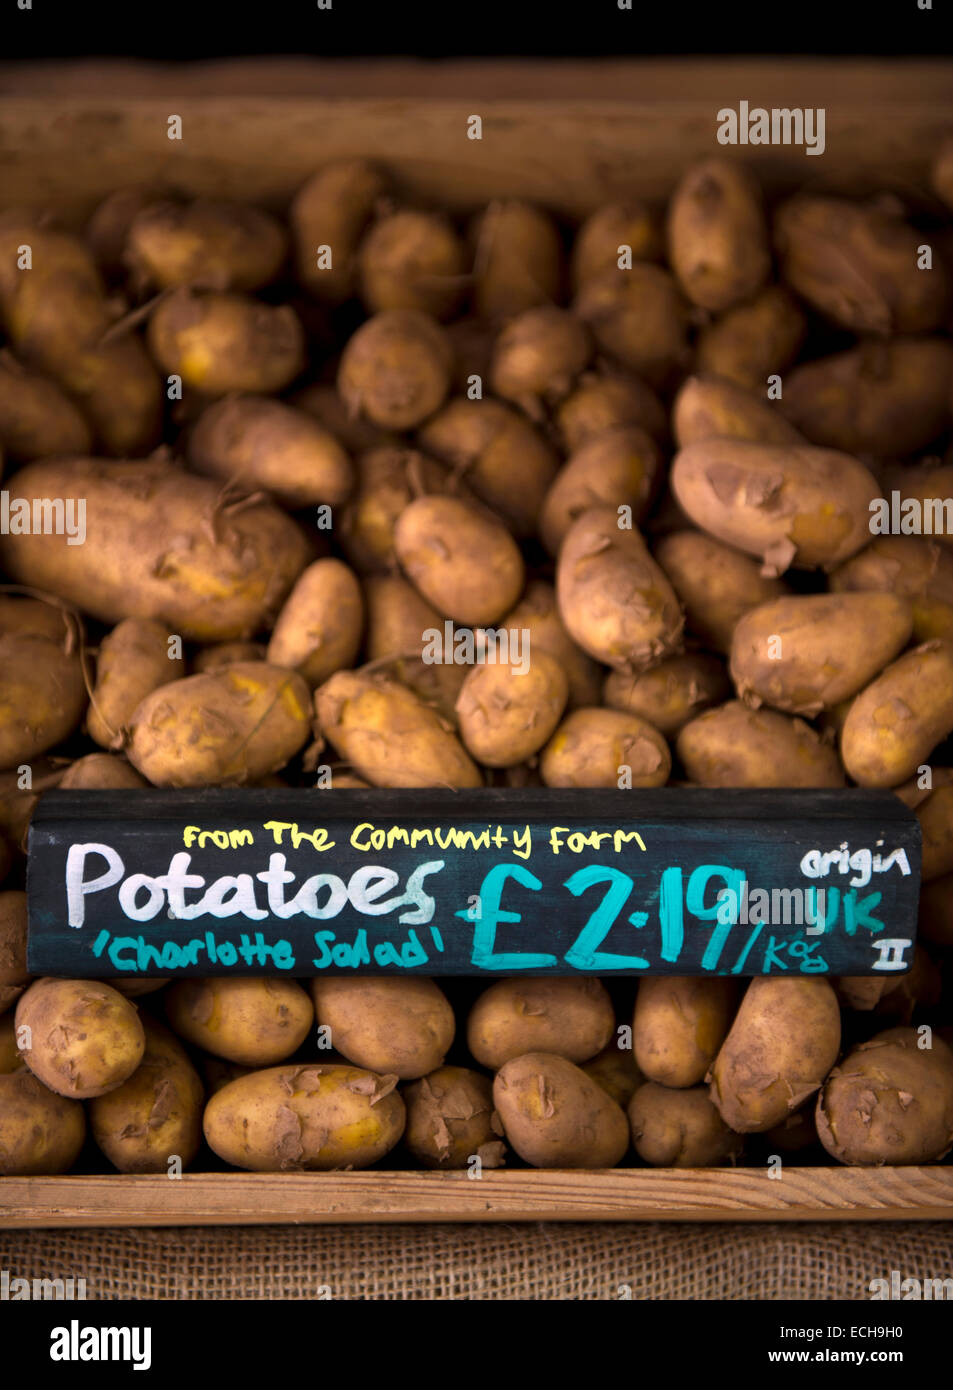 Pommes de terre cultivés localement à partir d'une ferme communautaire dans un supermarché biologique UK Banque D'Images